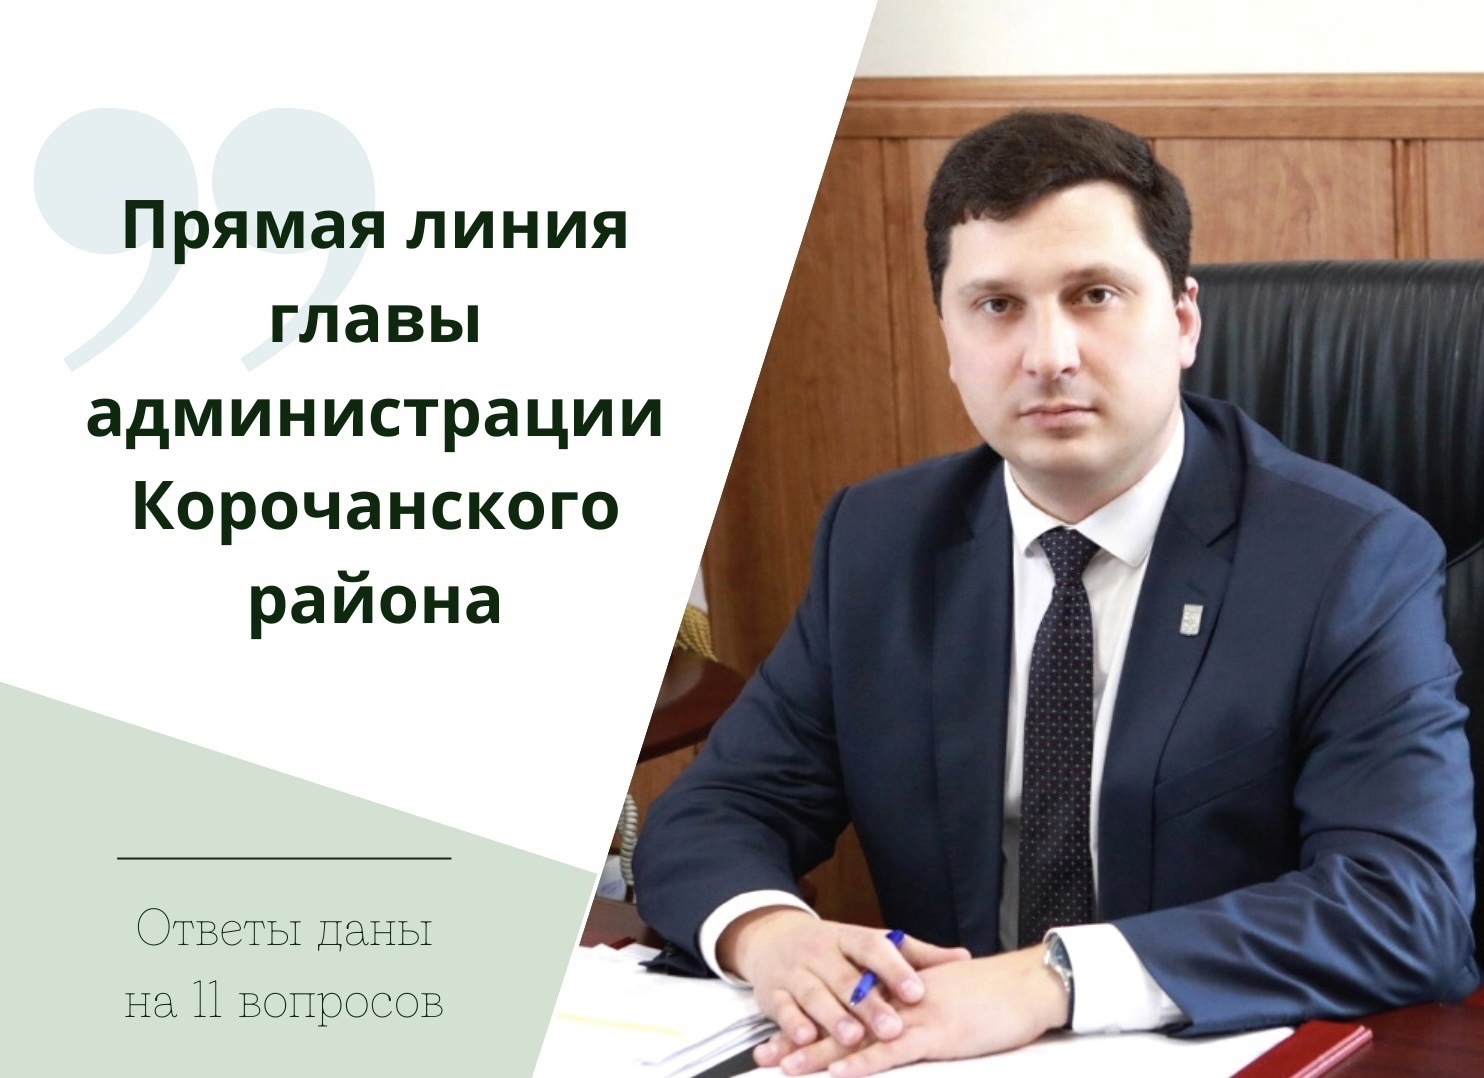 В ходе прямой линии глава администрации района Николай Нестеров дал ответ на 11 вопросов